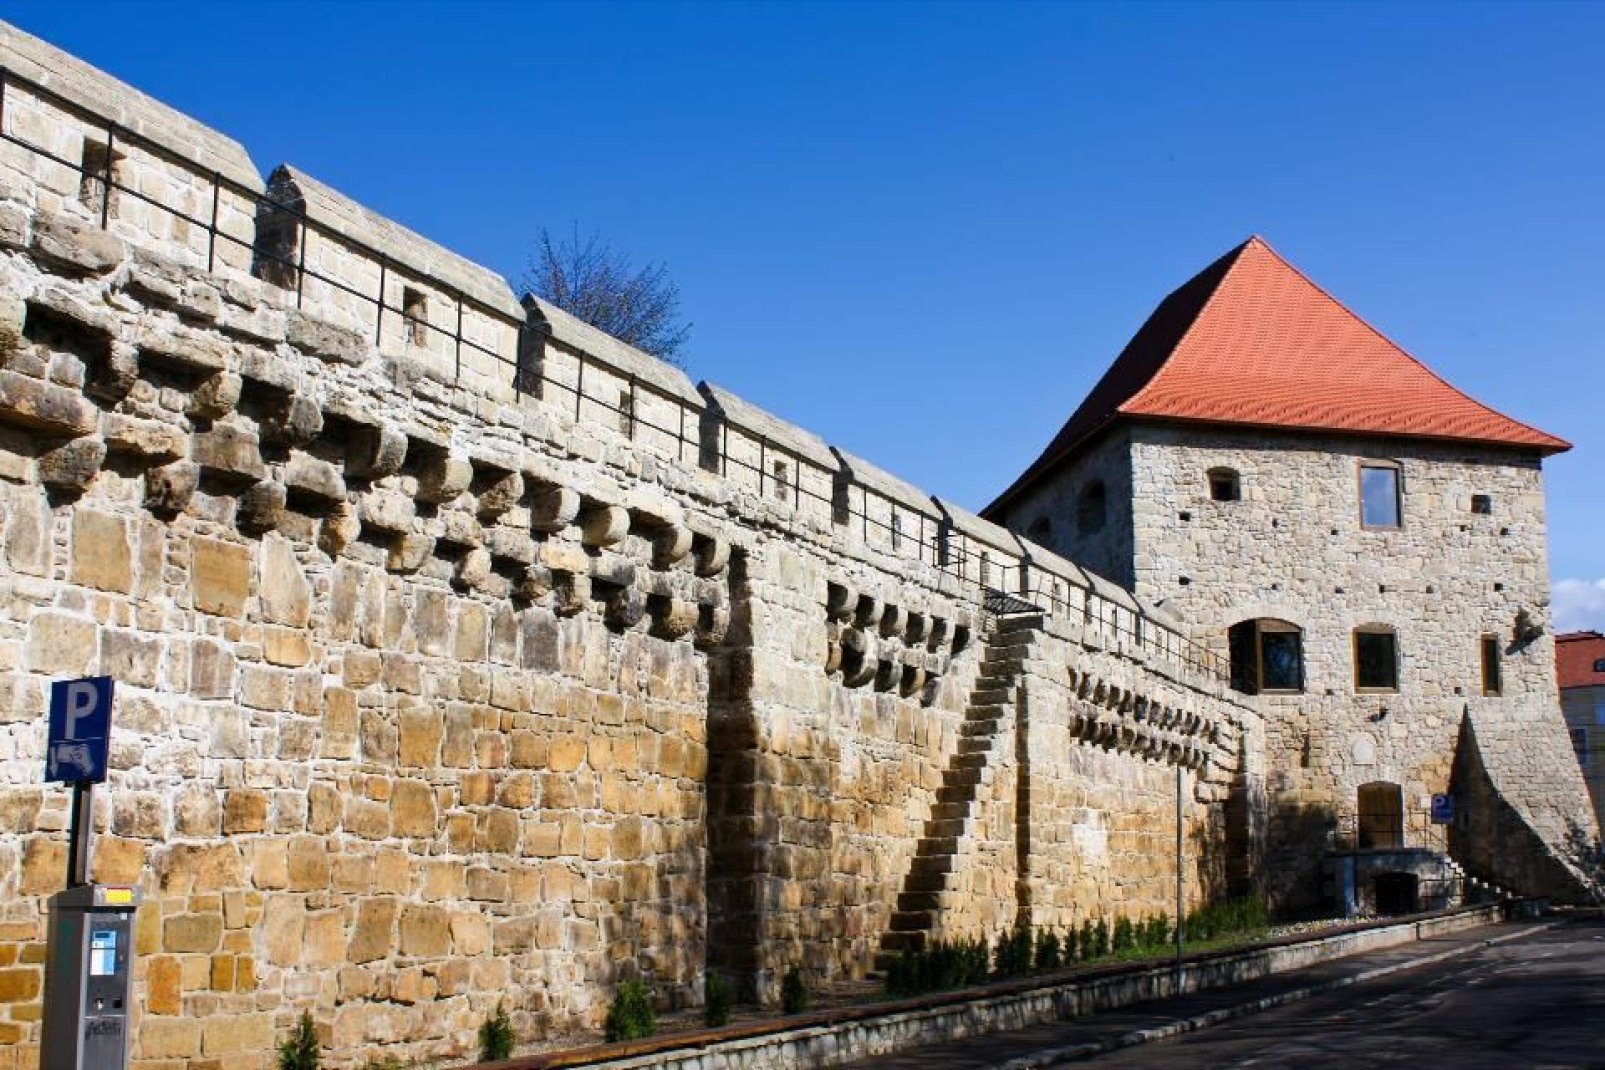 Die zweite Befestigungsmauer von Cluj-Napoca wurde im 15. Jahrhundert angelegt und erstreckte sich einst ber 45 Hektar. Sie wurde im 19. Jahrhundert zerstrt, sodass von den ursprnglich 20 Trmen nur mehr 2 brig sind.